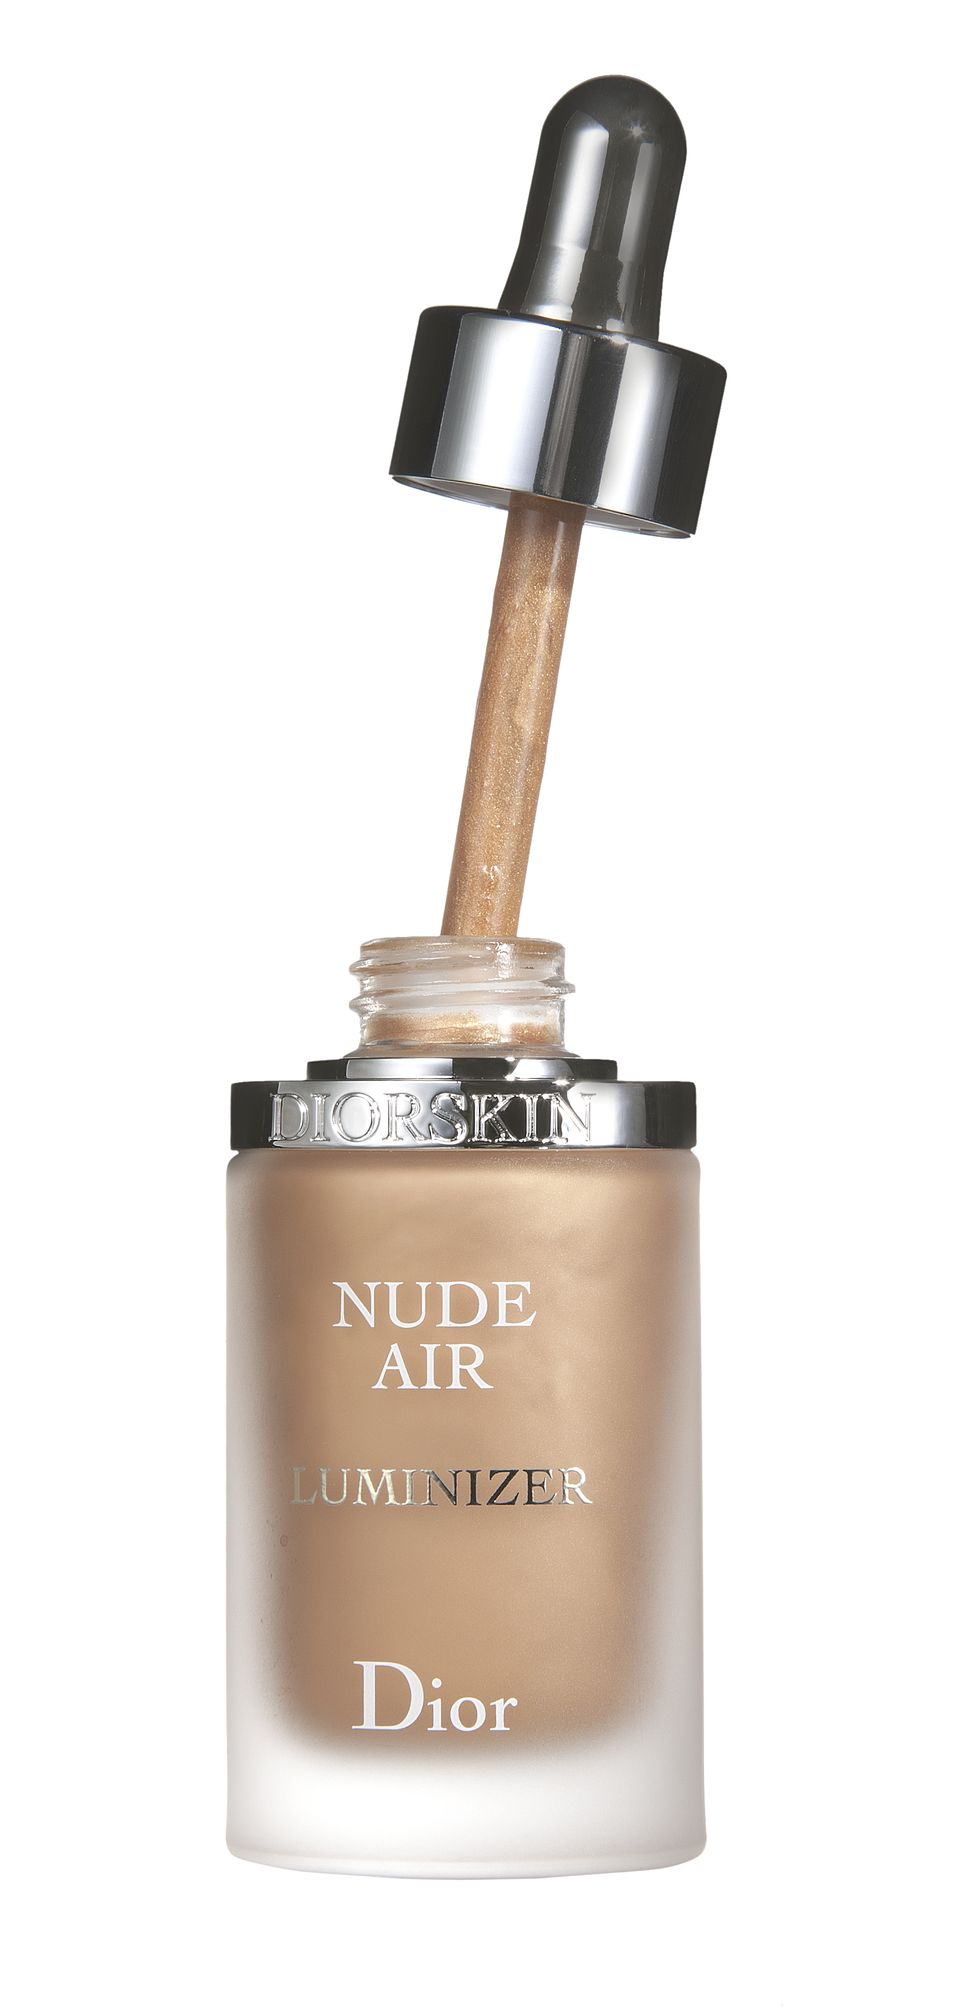 Effetto glow, per unteint satinato e baciatodal sole: Diorskin NudeAir Luminizer Serum Spf 8di Dior (51,21 euro).